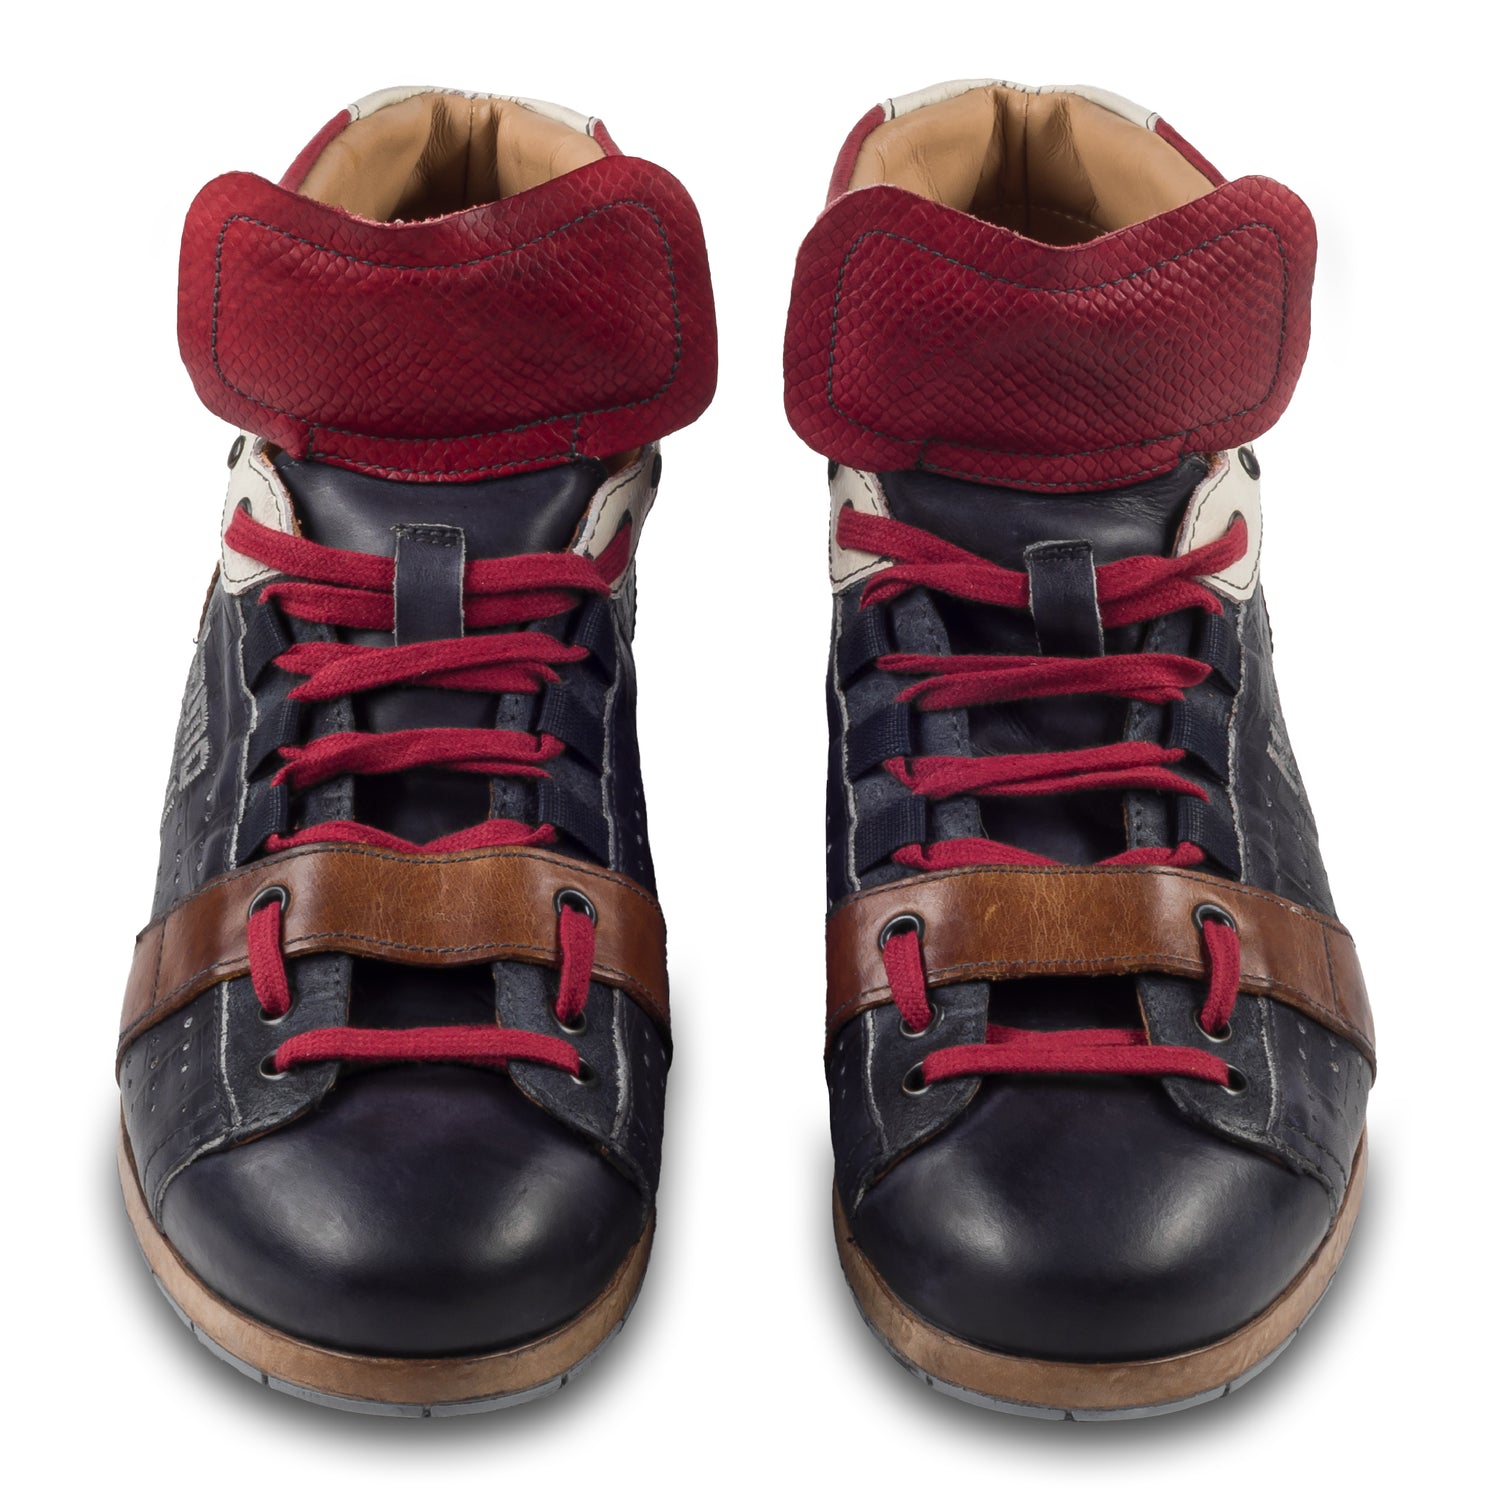 KAMO-GUTSU Italienischer Herren Leder Sneaker Stiefel, blau rot braun, Retro-Optik, Modell TIFO-105 navy mamba rosso. Handgefertigt. Paarweise Ansicht von vorne.